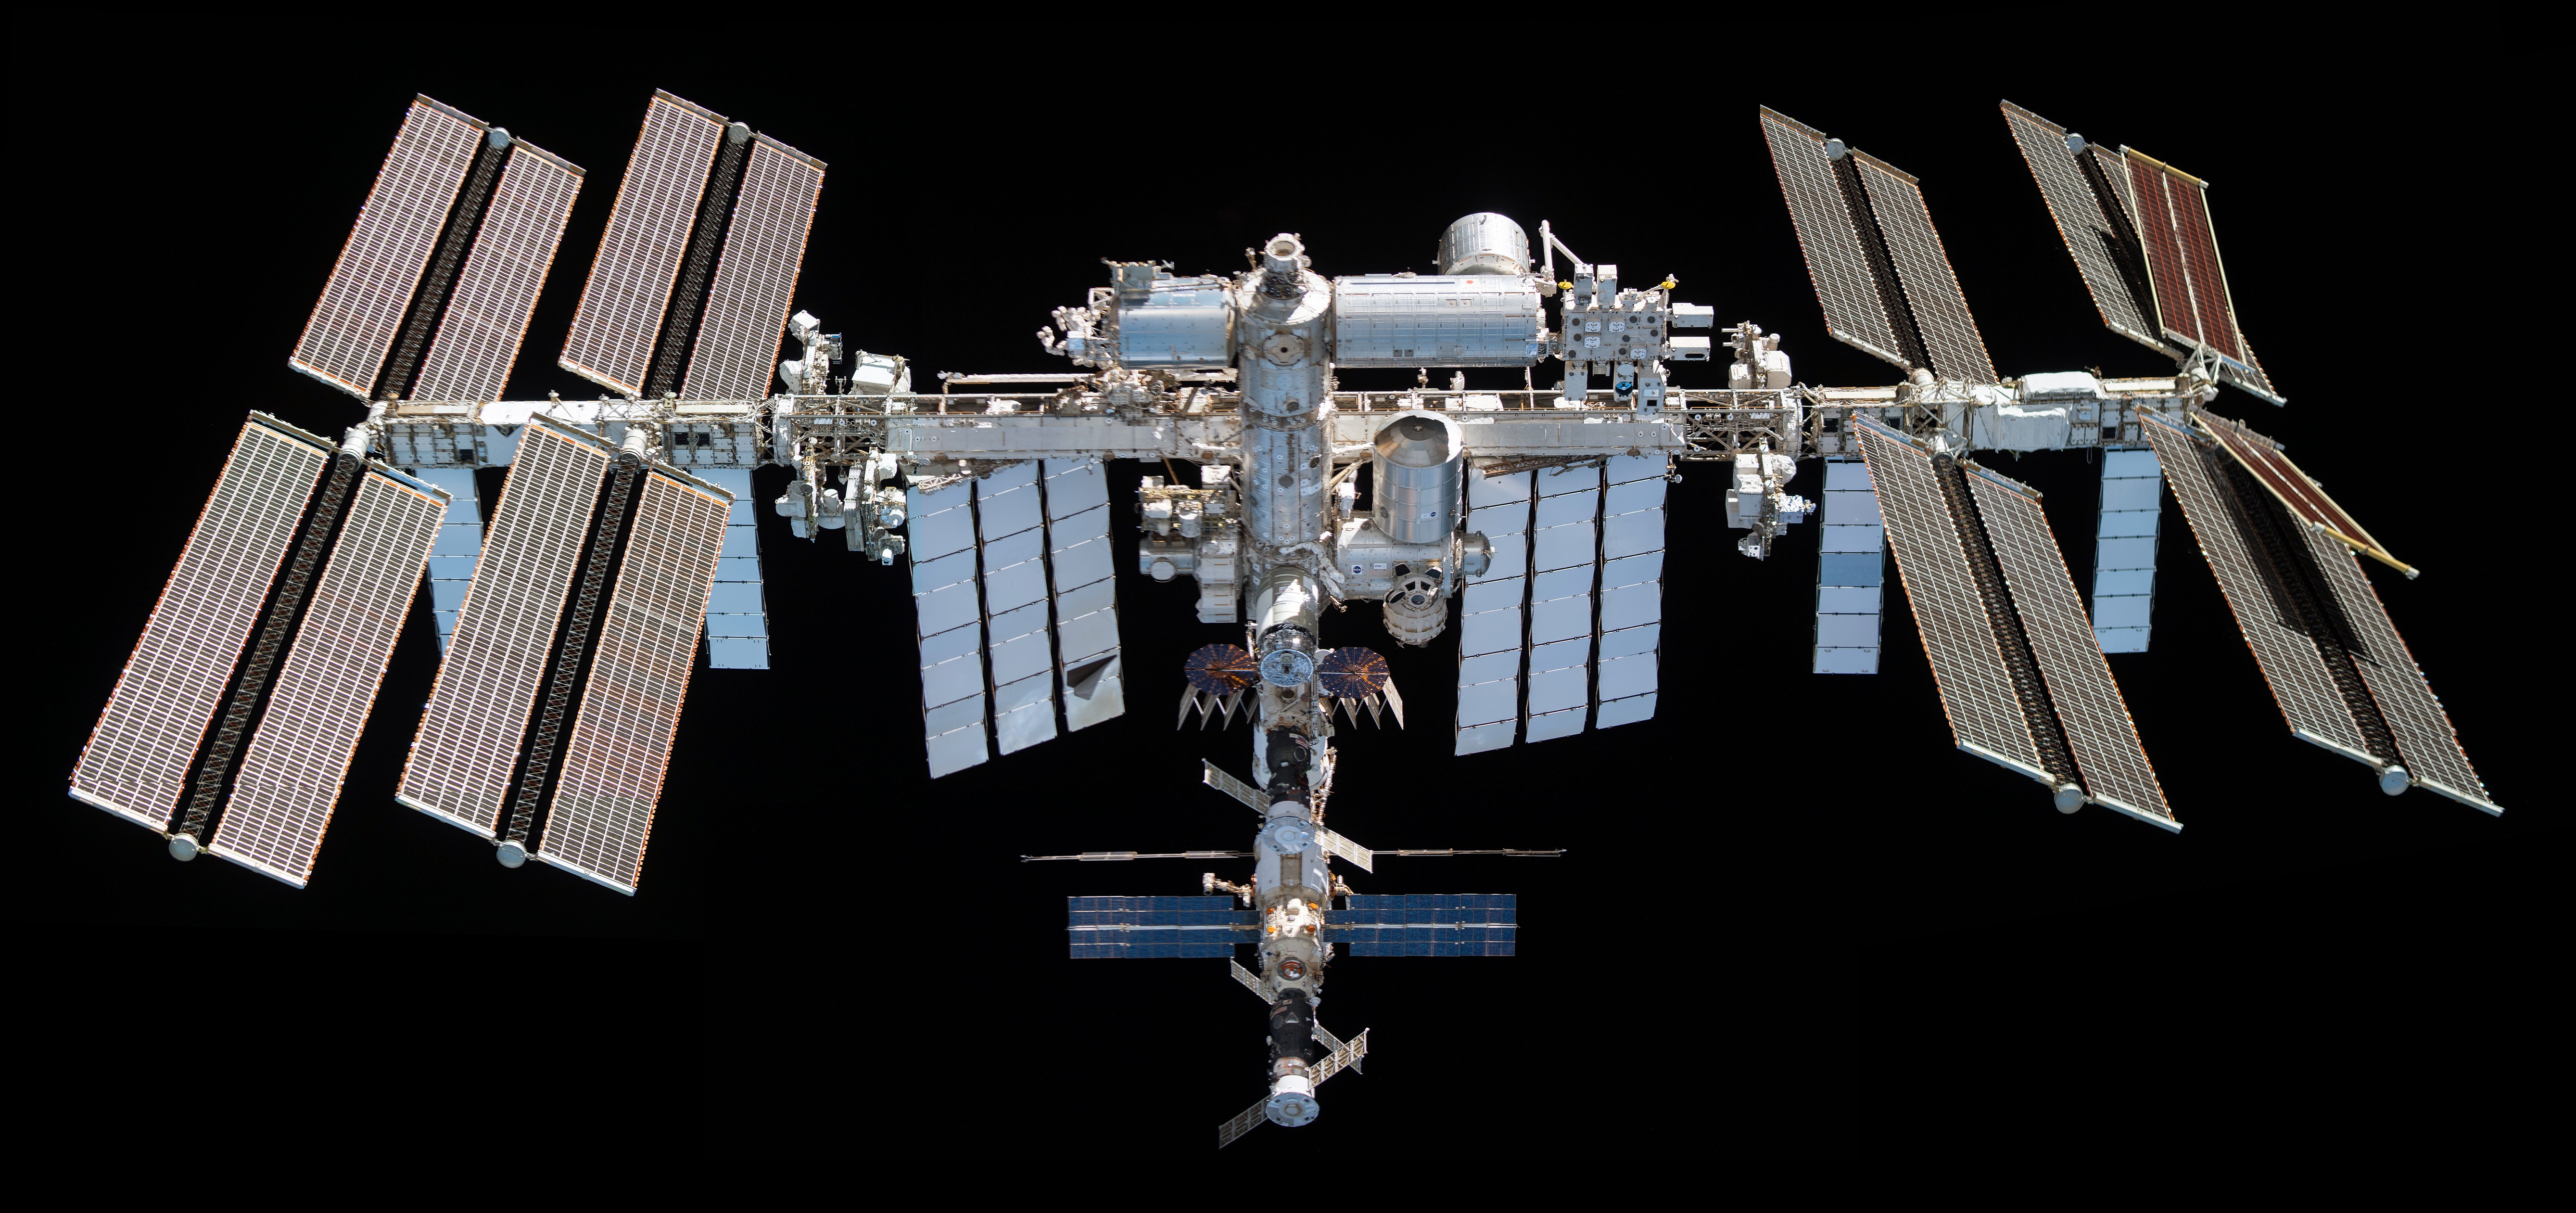 La Stazione Spaziale Internazionale come appariva nel 2021